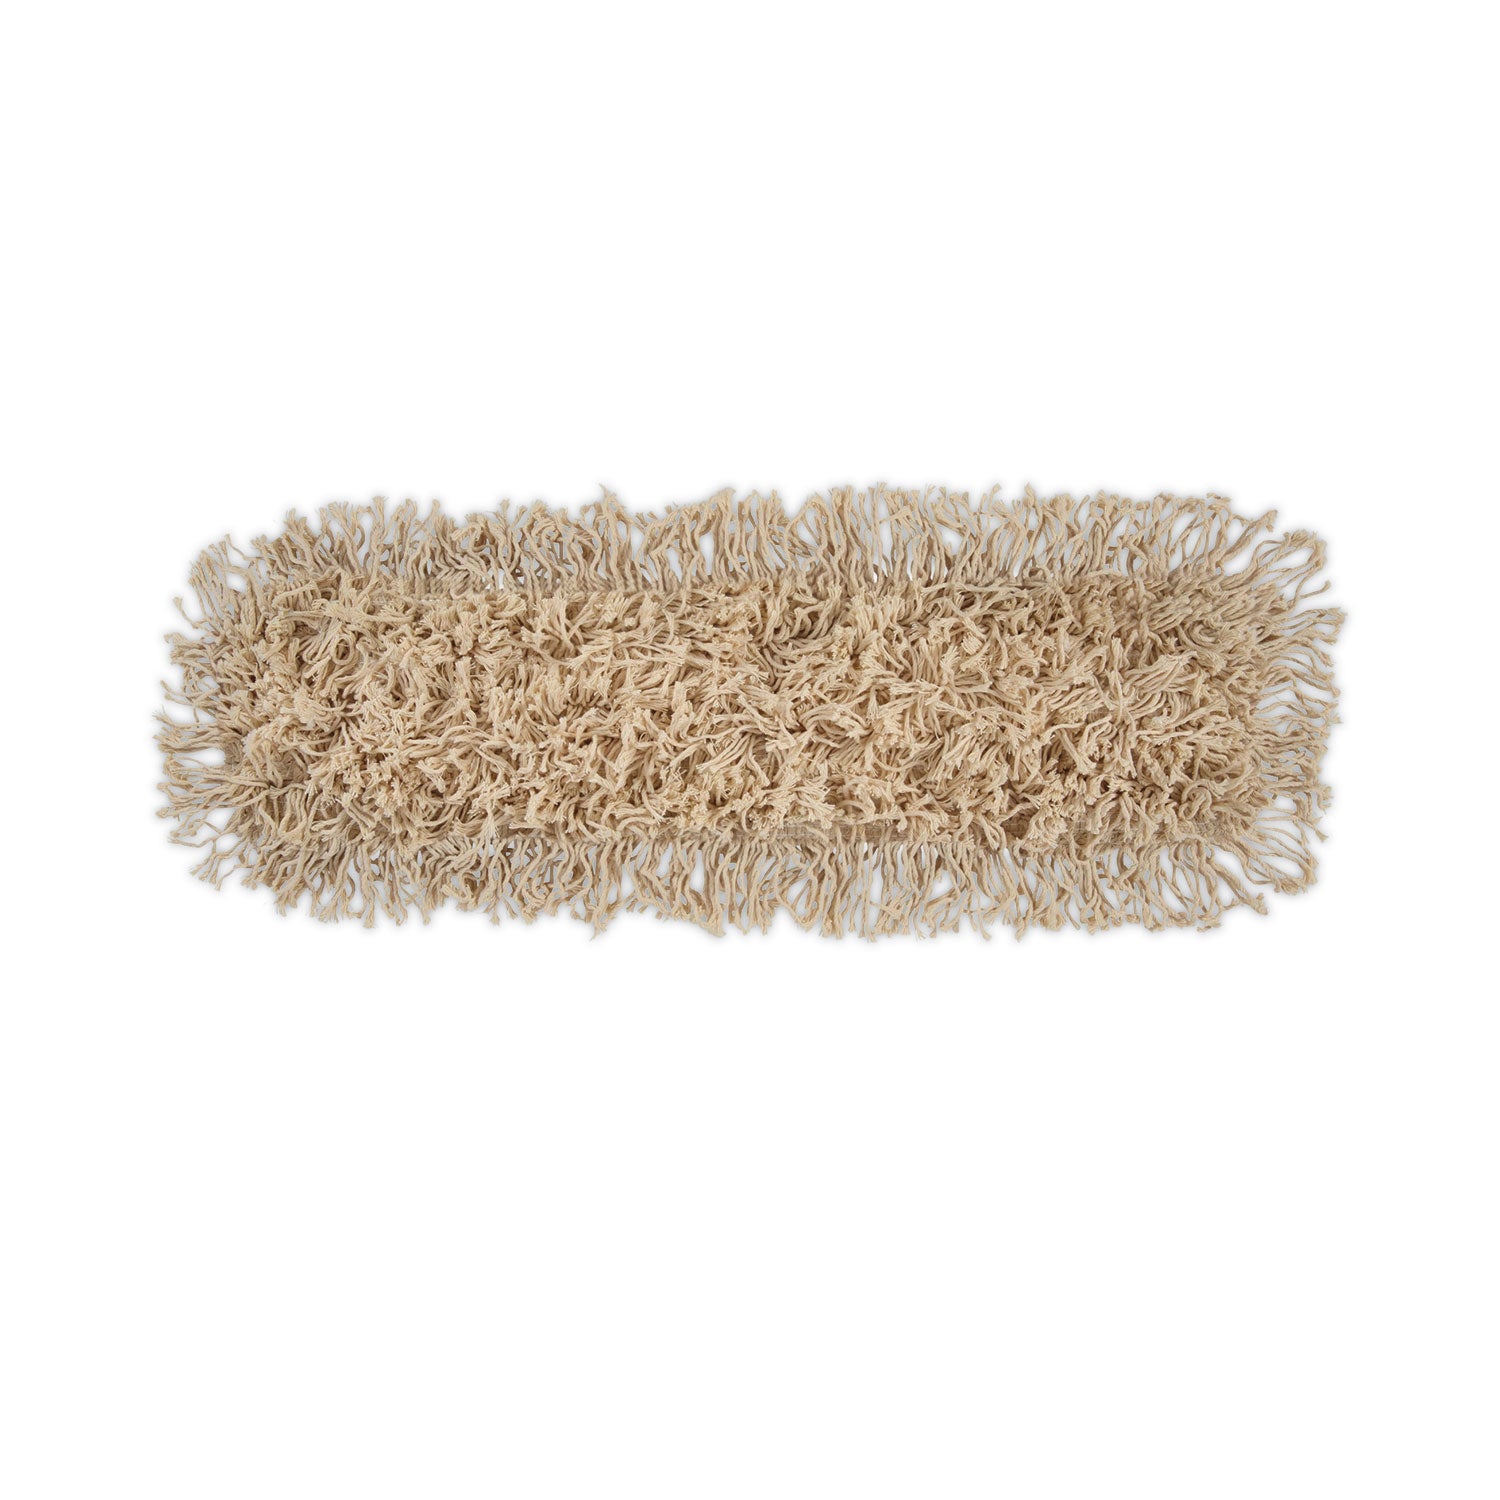 Industrial Dust Mop Head, Hygrade Cotton, 24w x 5d, White - 